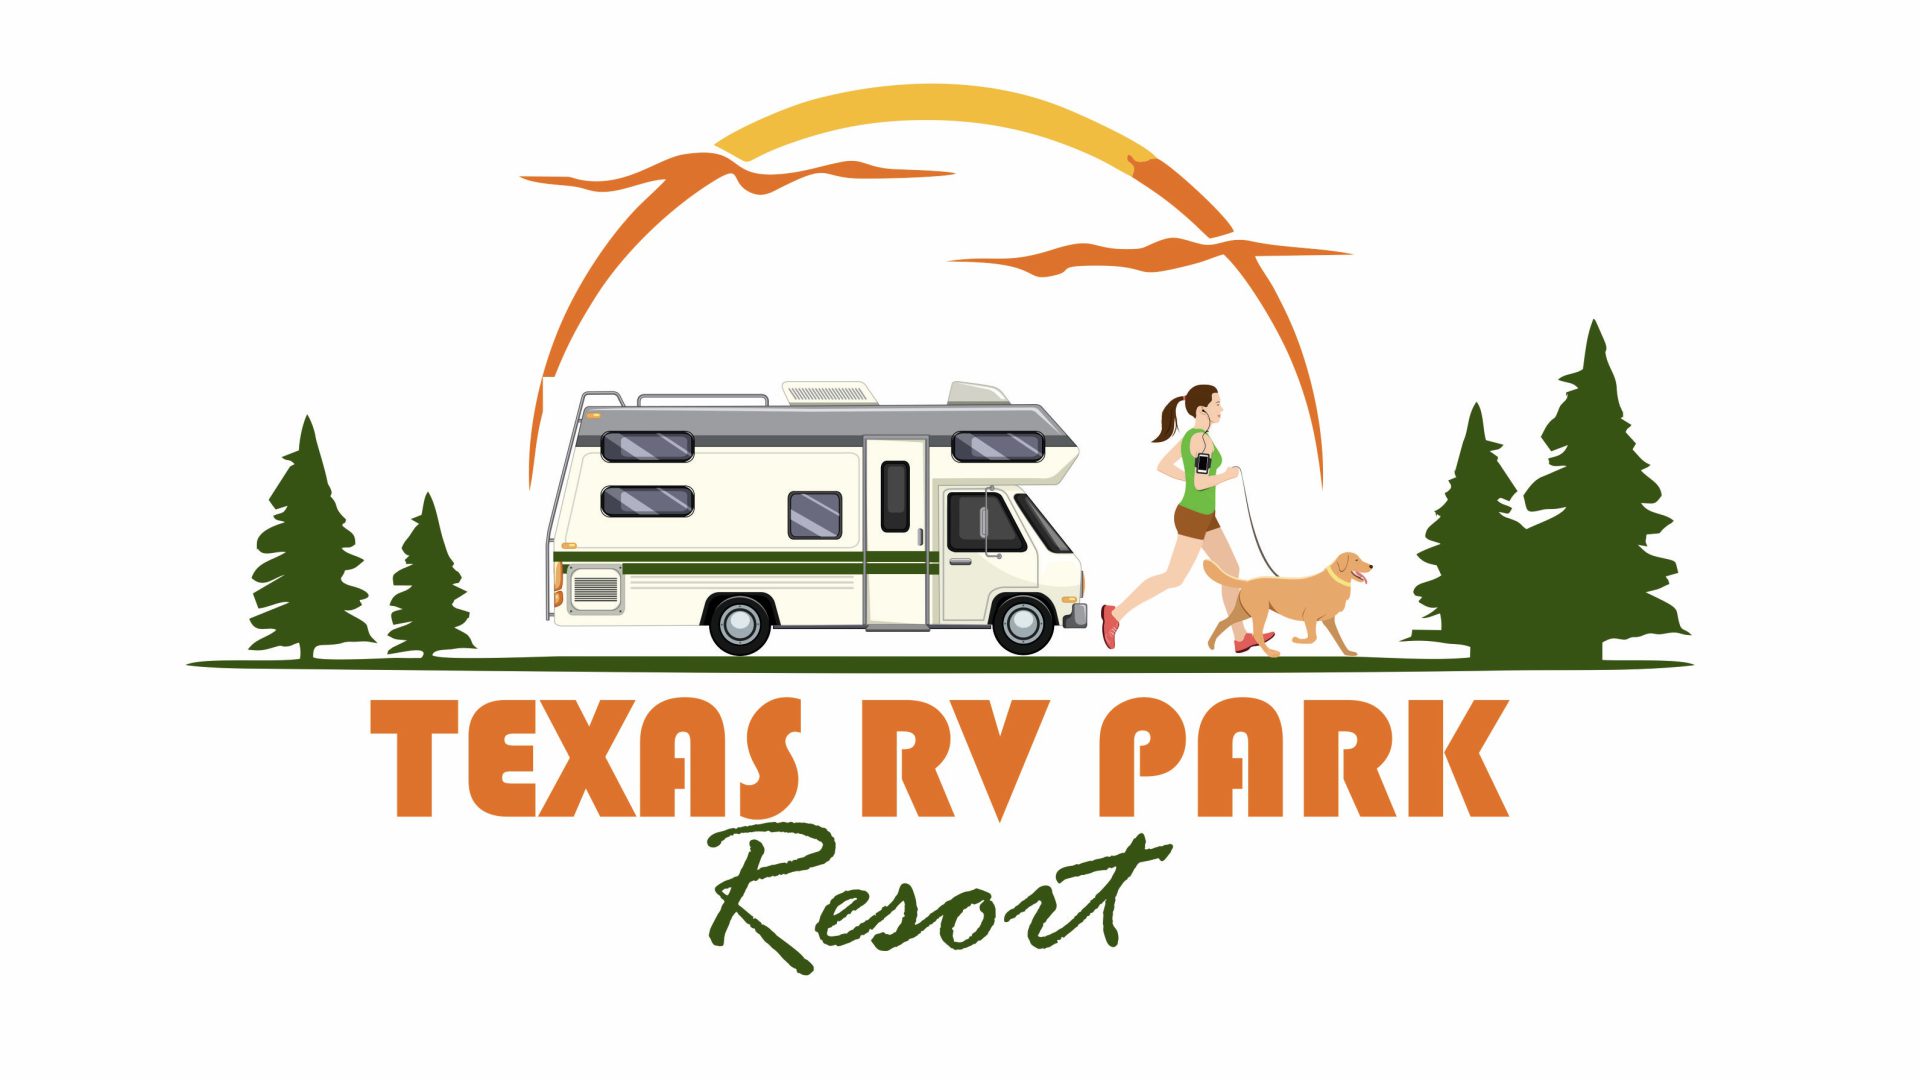 Texas RV Park Resort